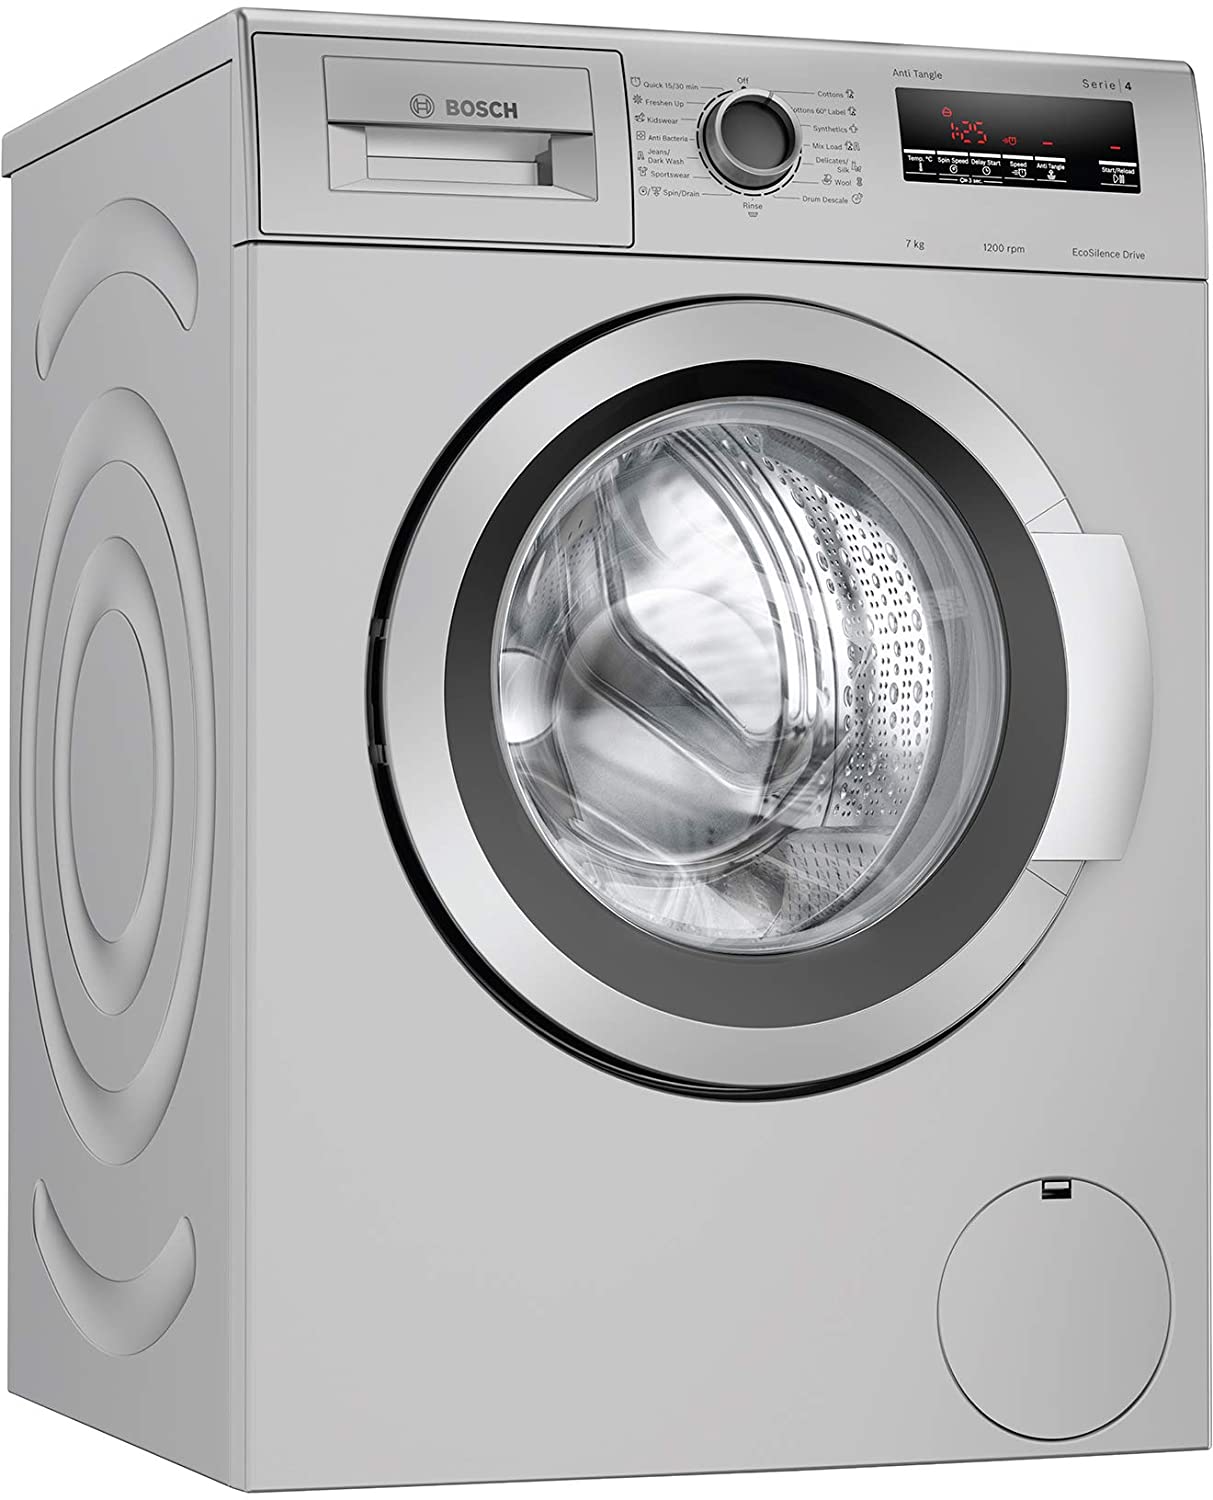 Bosch 7 kg Front Load Washing Machine